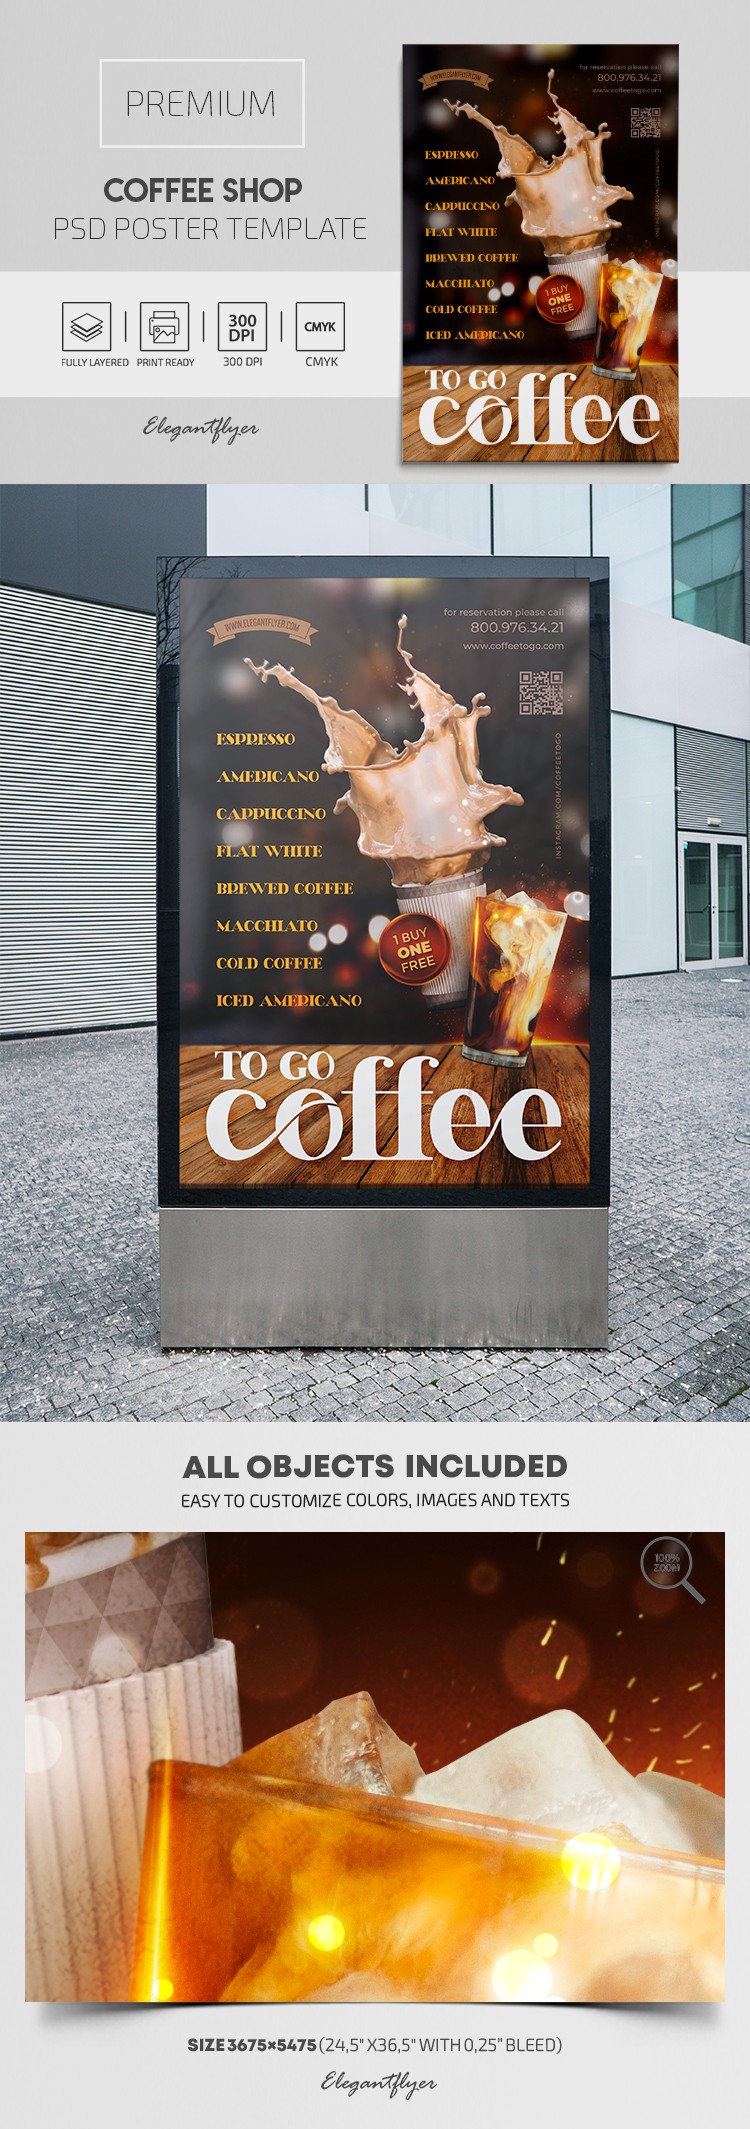 Affiche de café by ElegantFlyer